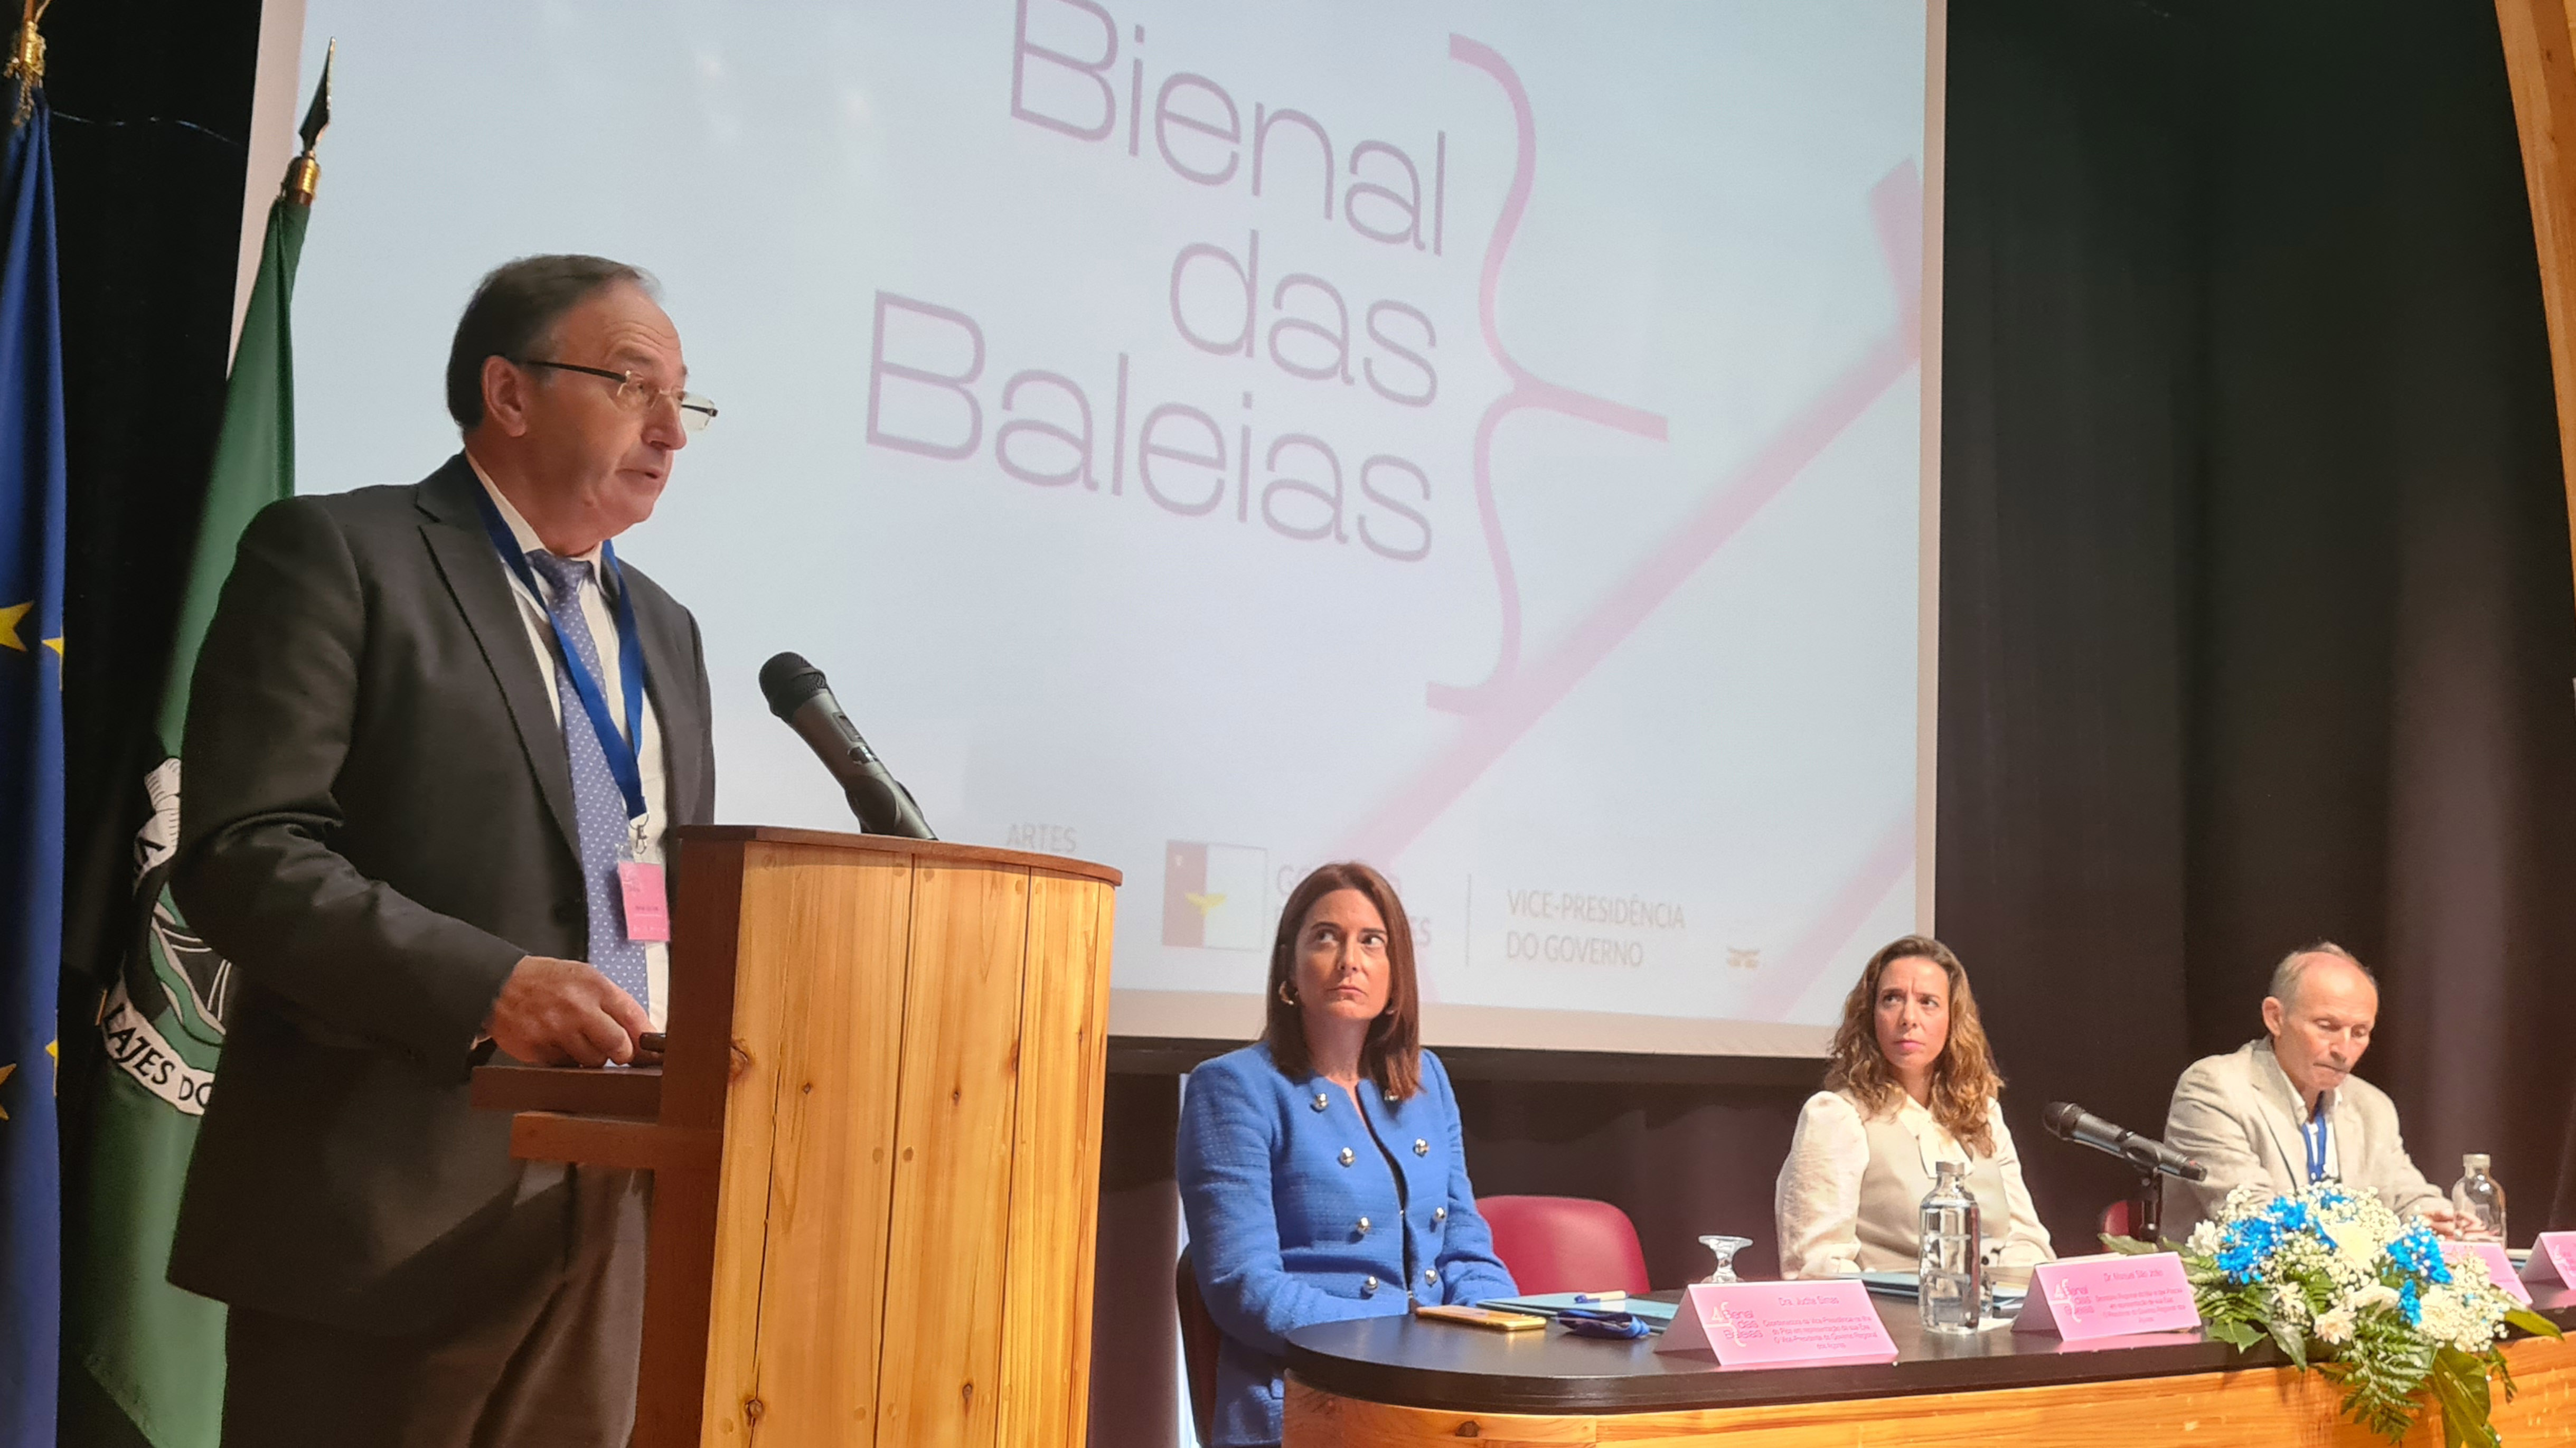 Açores devem prosseguir pioneirismo no desenvolvimento sustentável, defende Manuel São João